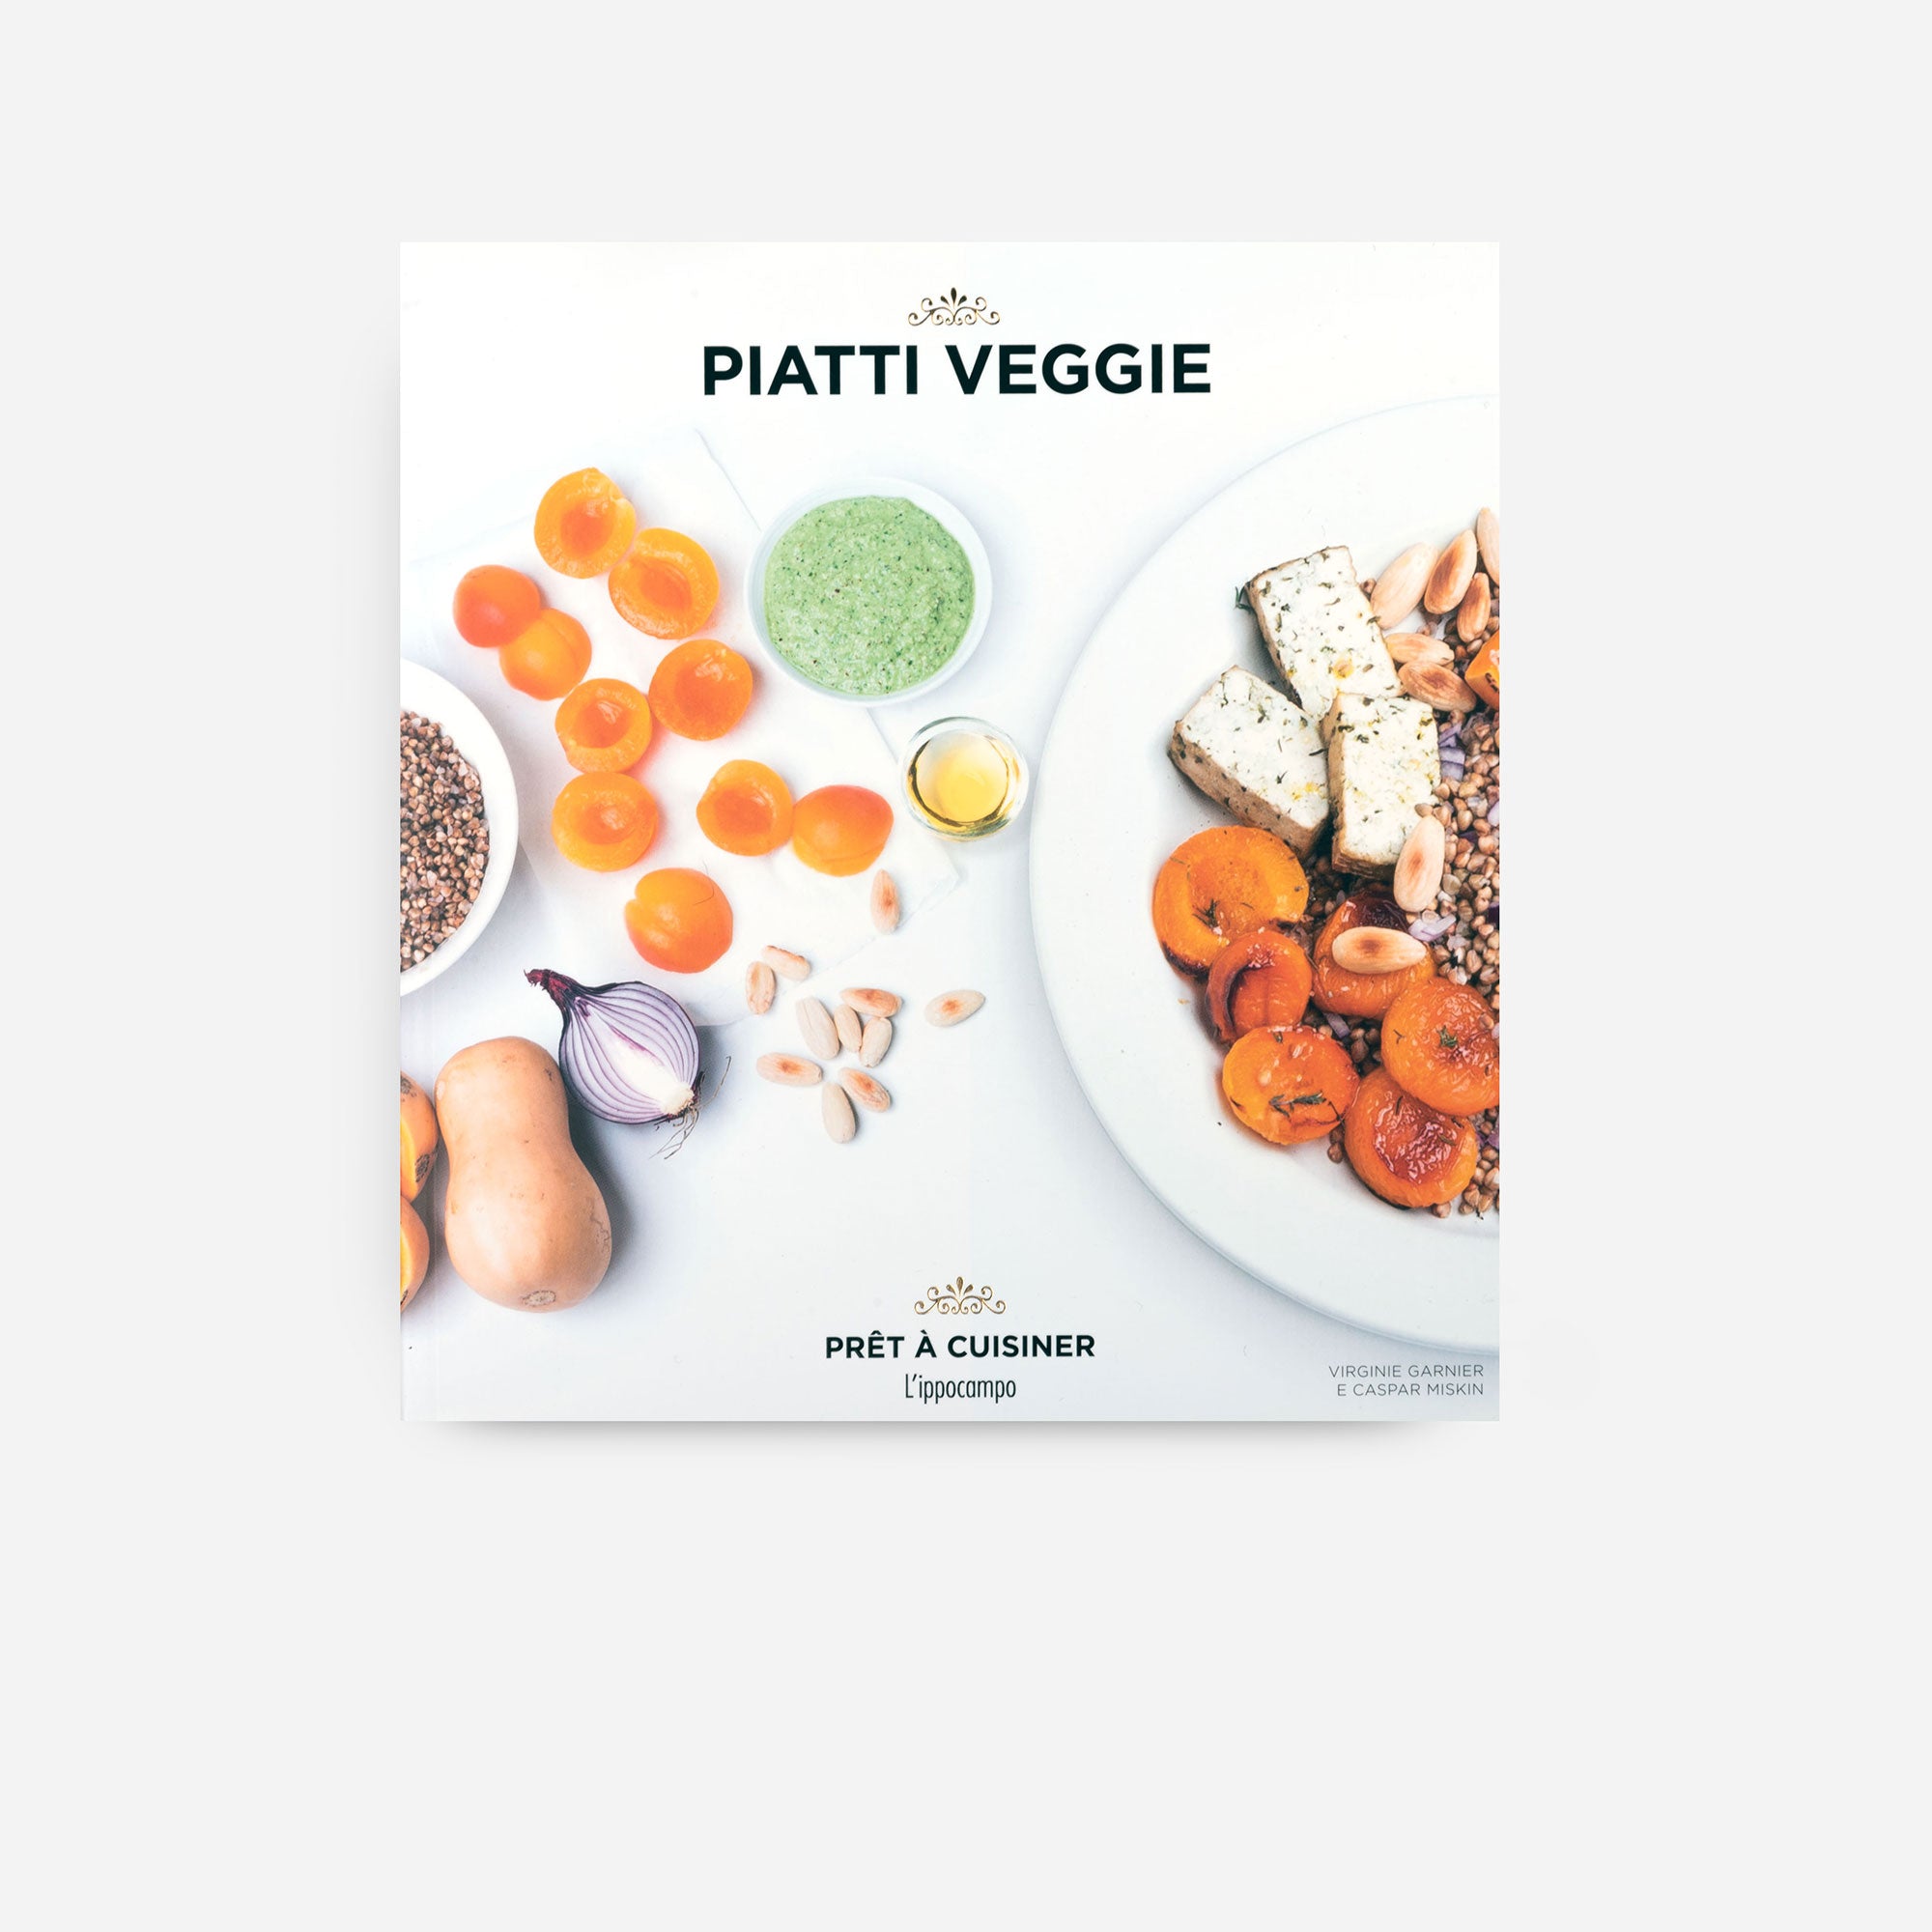 Piatti veggie - Pret à cuisiner